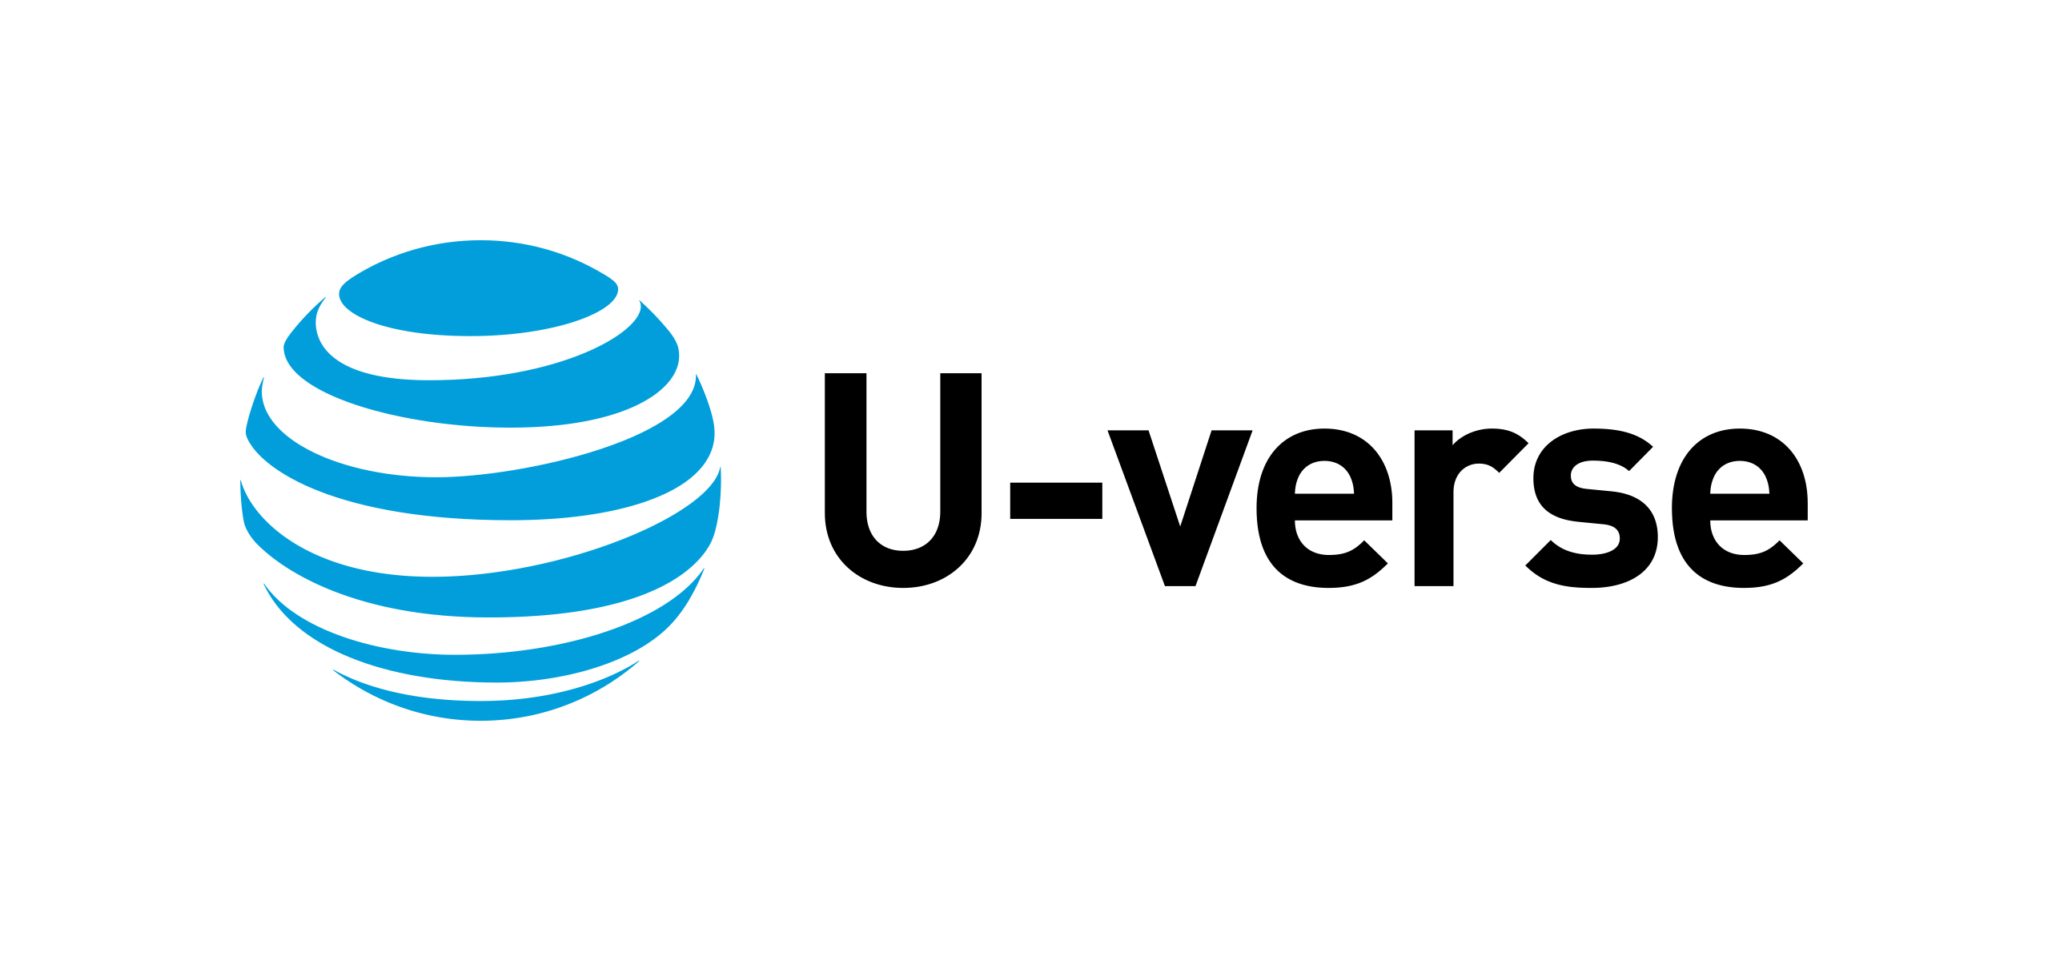 ATT Uverse logo